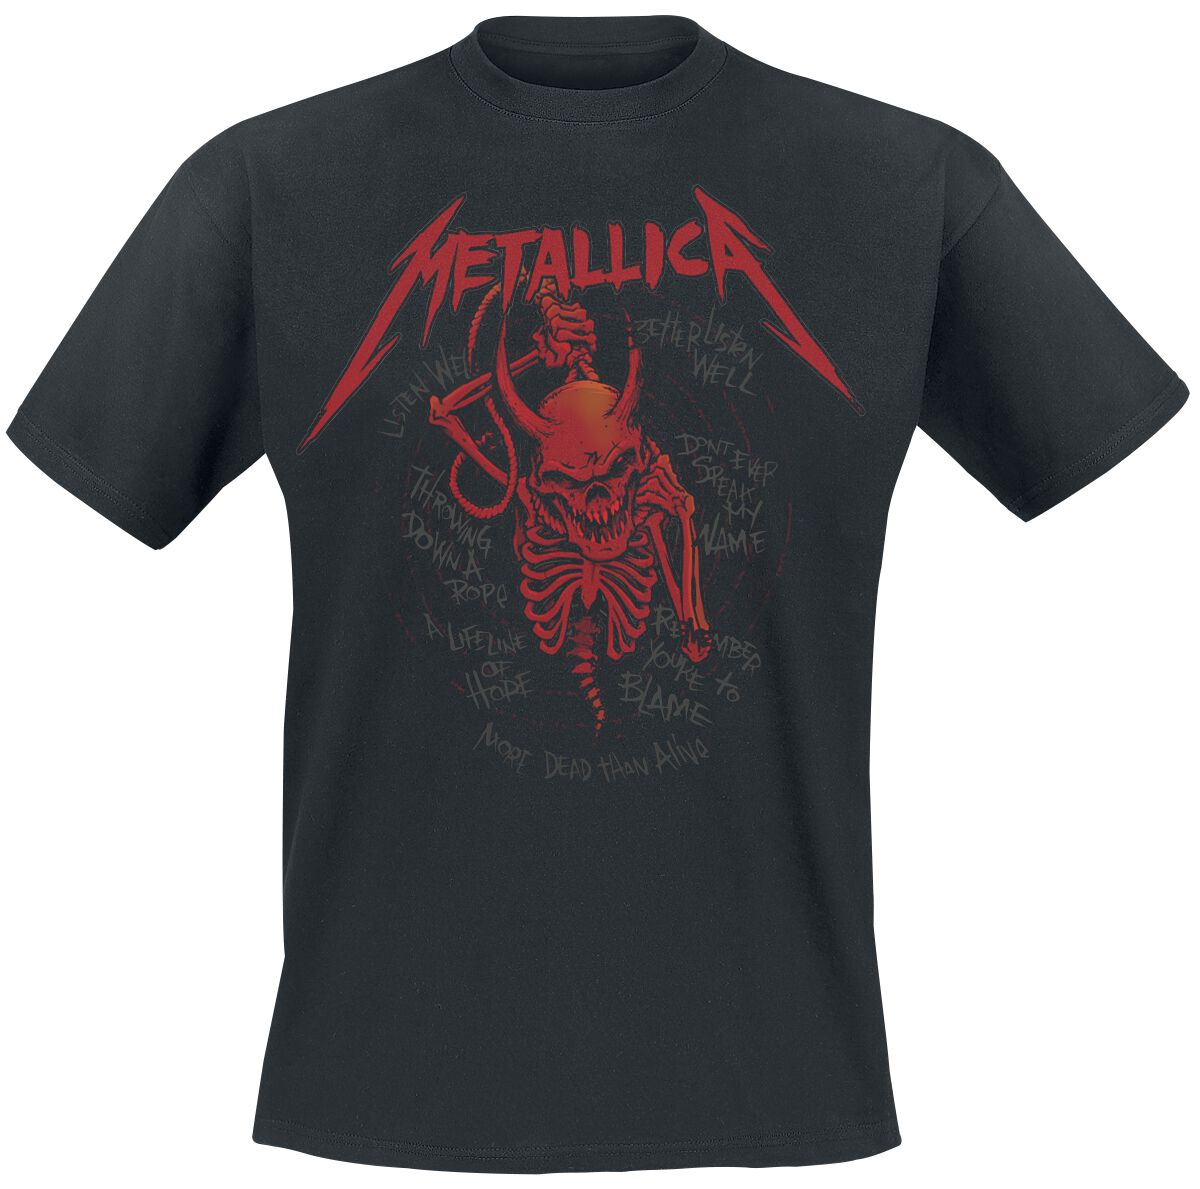 Metallica T-Shirt - Skull Screaming Red 72 Seasons - S bis 4XL - für Männer - Größe 4XL - schwarz  - Lizenziertes Merchandise!